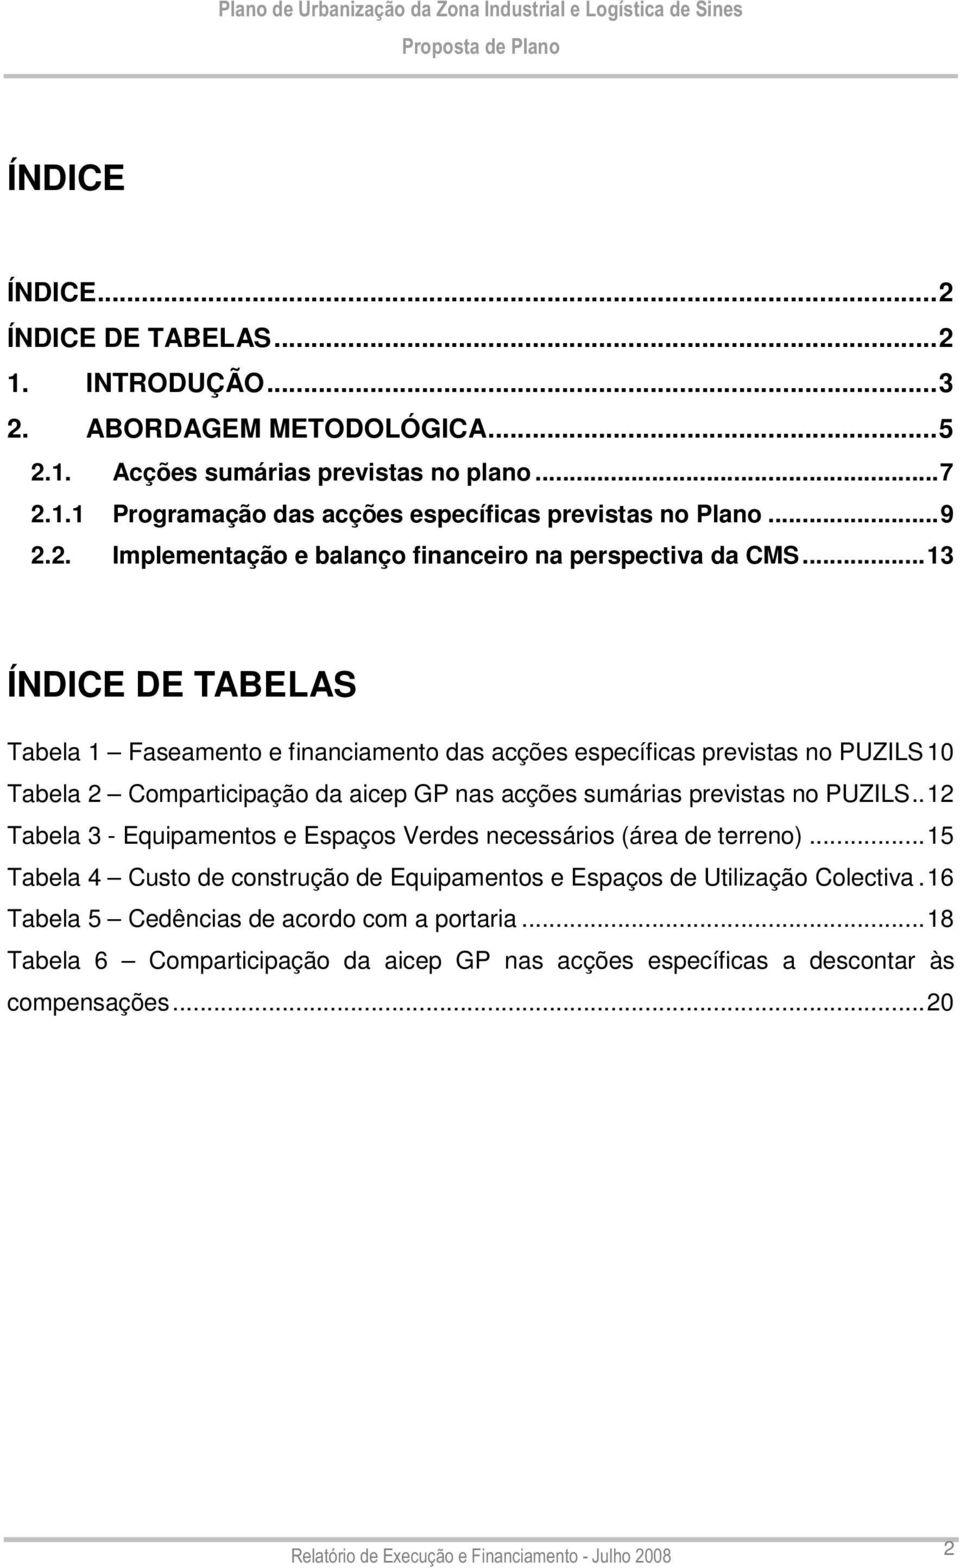 ..13 ÍNDICE DE TABELAS Tabela 1 Faseamento e financiamento das acções específicas previstas no PUZILS10 Tabela 2 Comparticipação da aicep GP nas acções sumárias previstas no PUZILS.